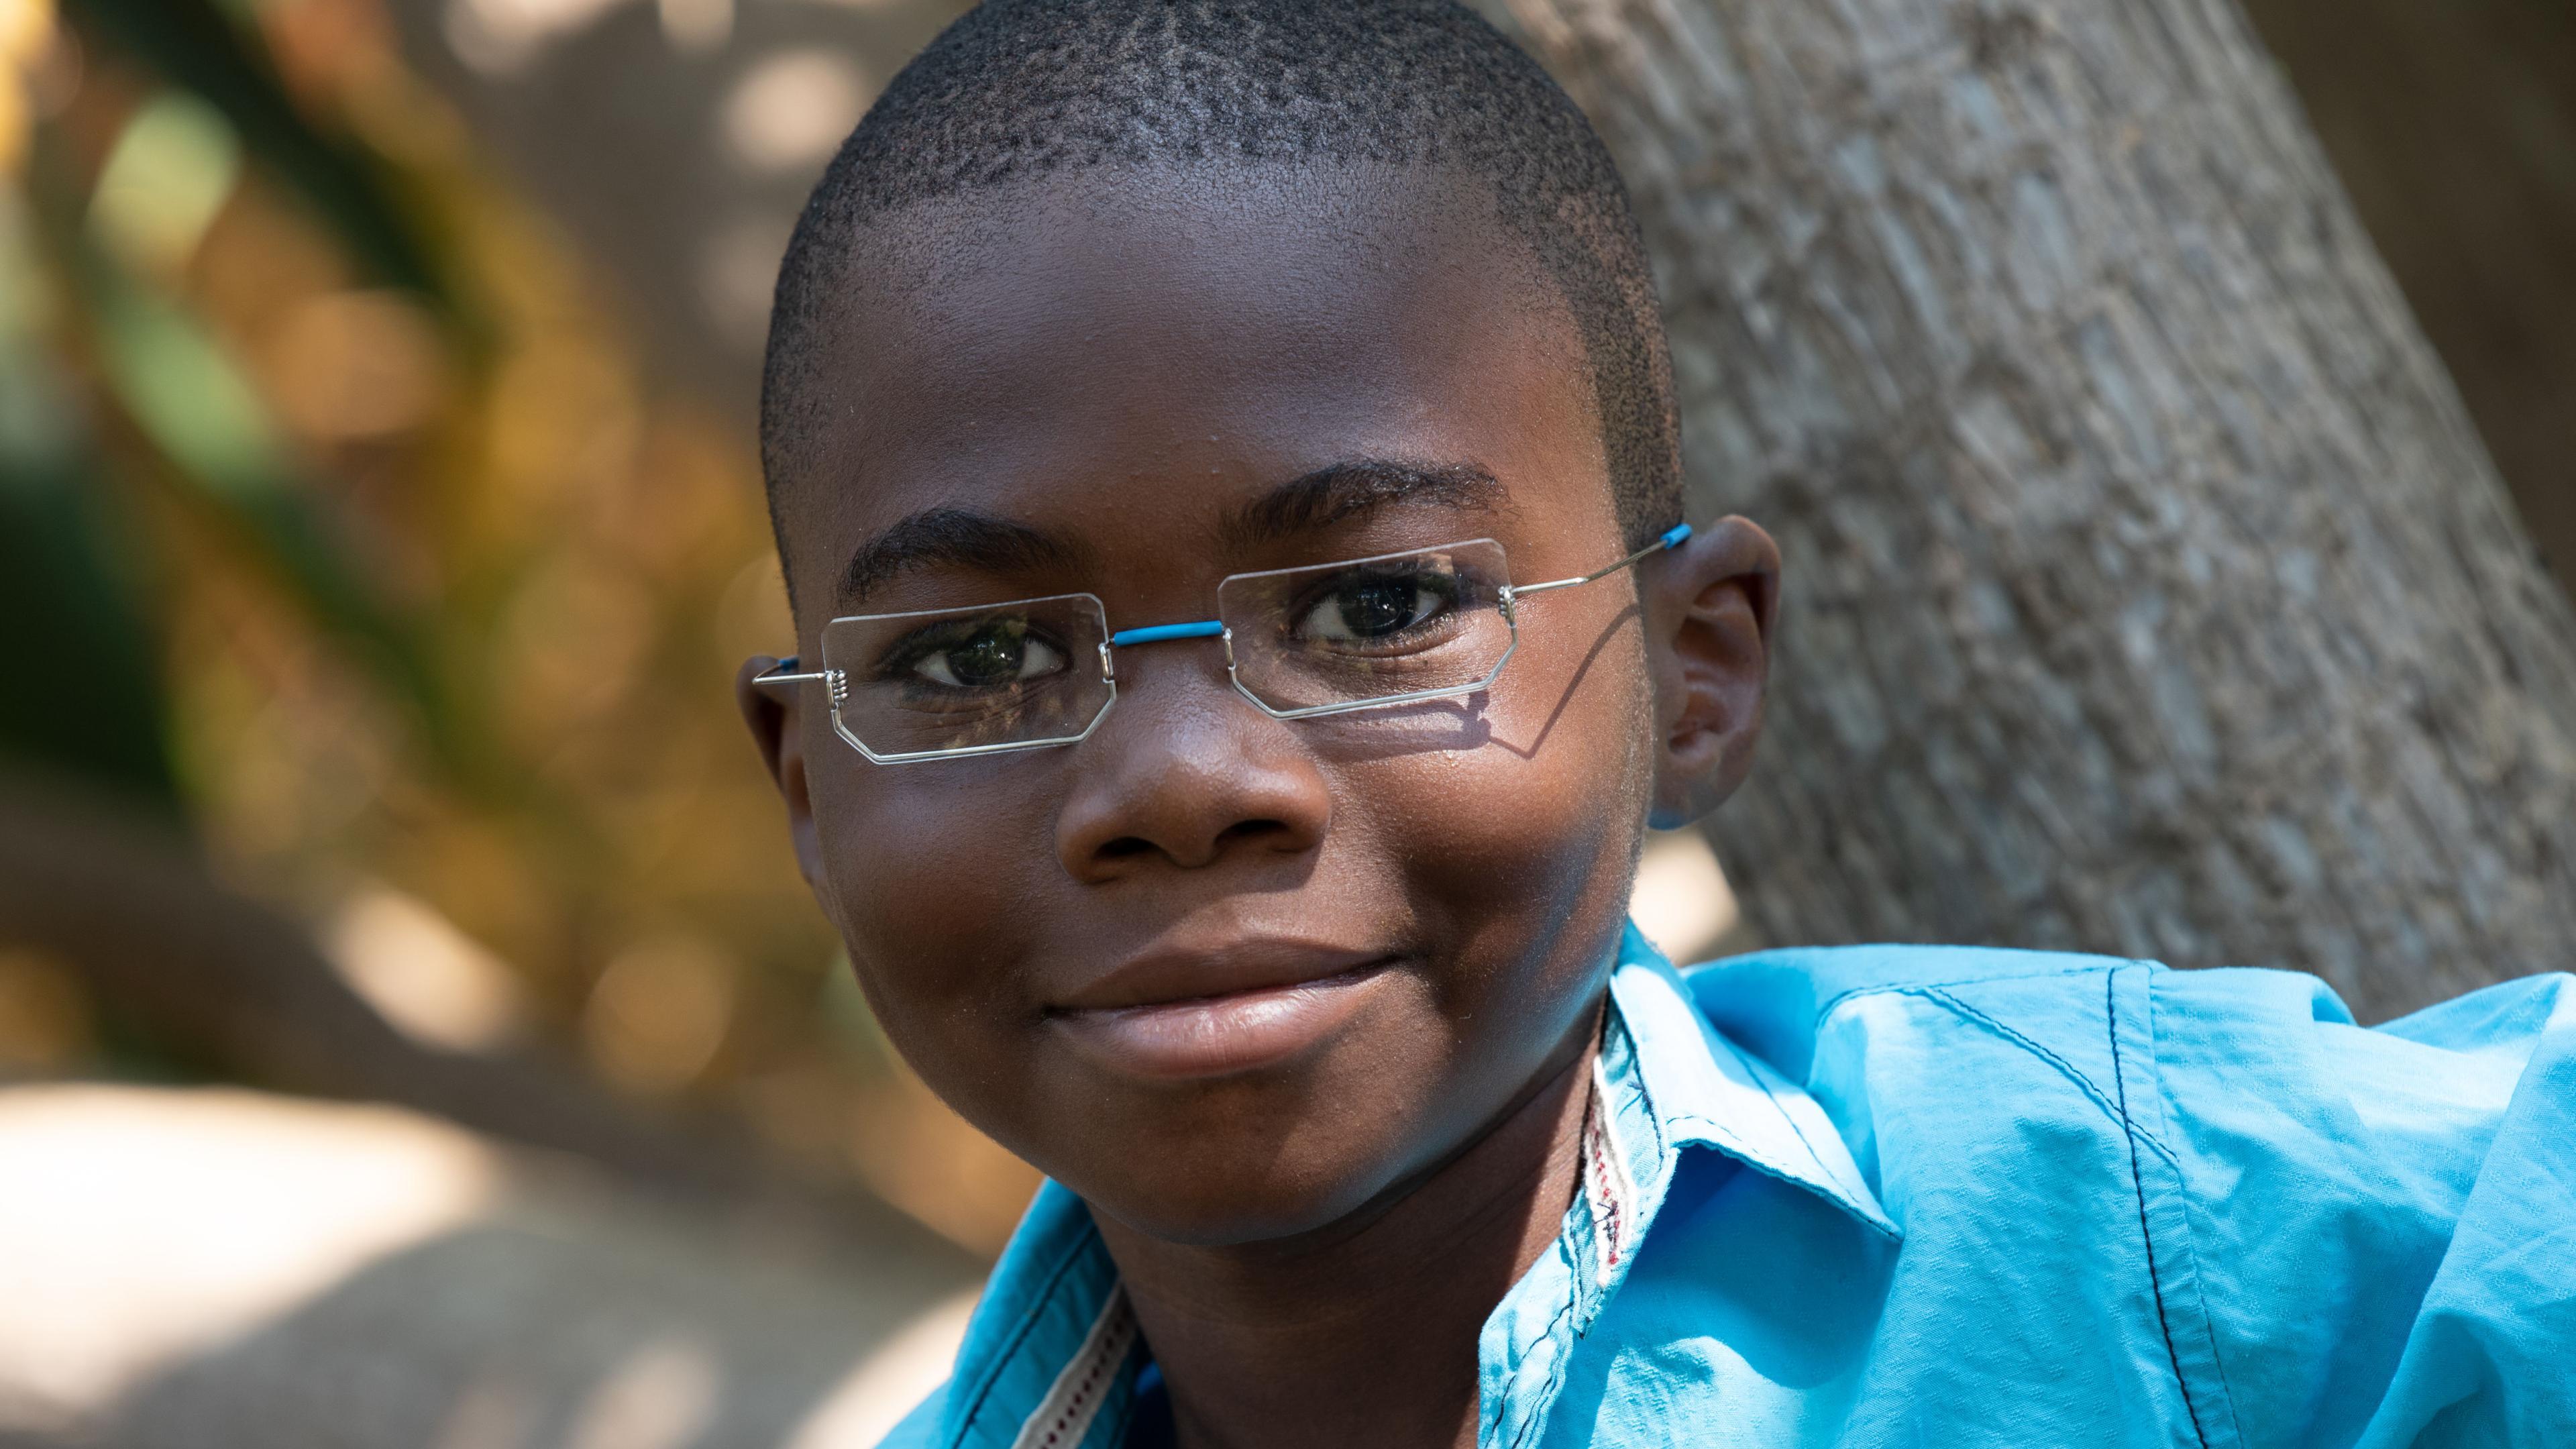 Malawischer Junge mit EinDollarBrille und eckigen Gläsern